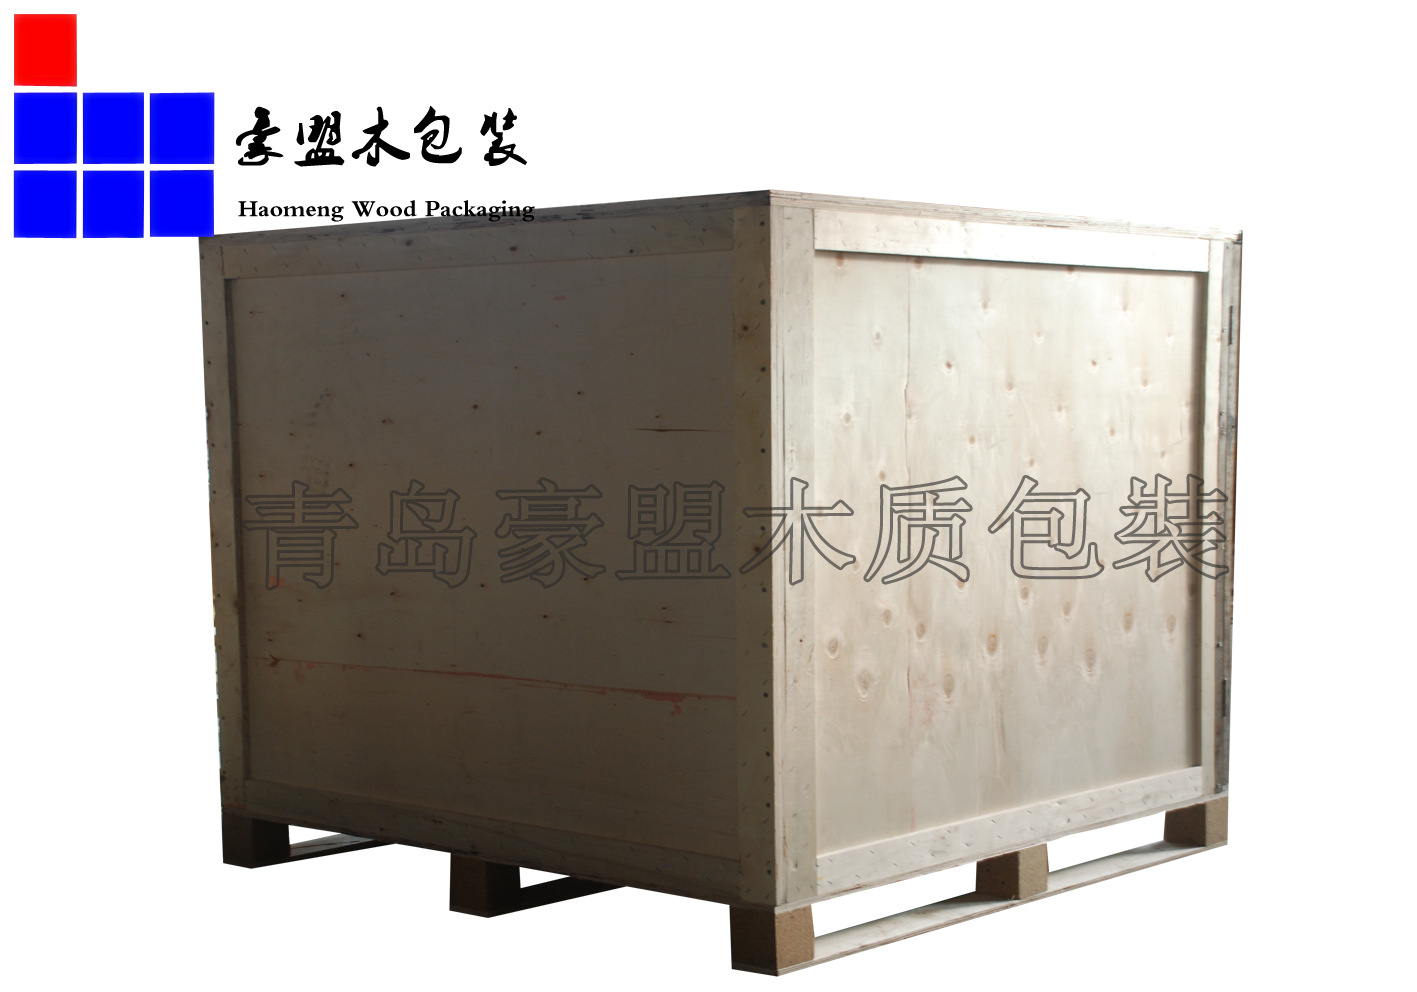 山东青岛木质包装箱胶合板免熏蒸出口货物打封闭包装载重4吨示例图4